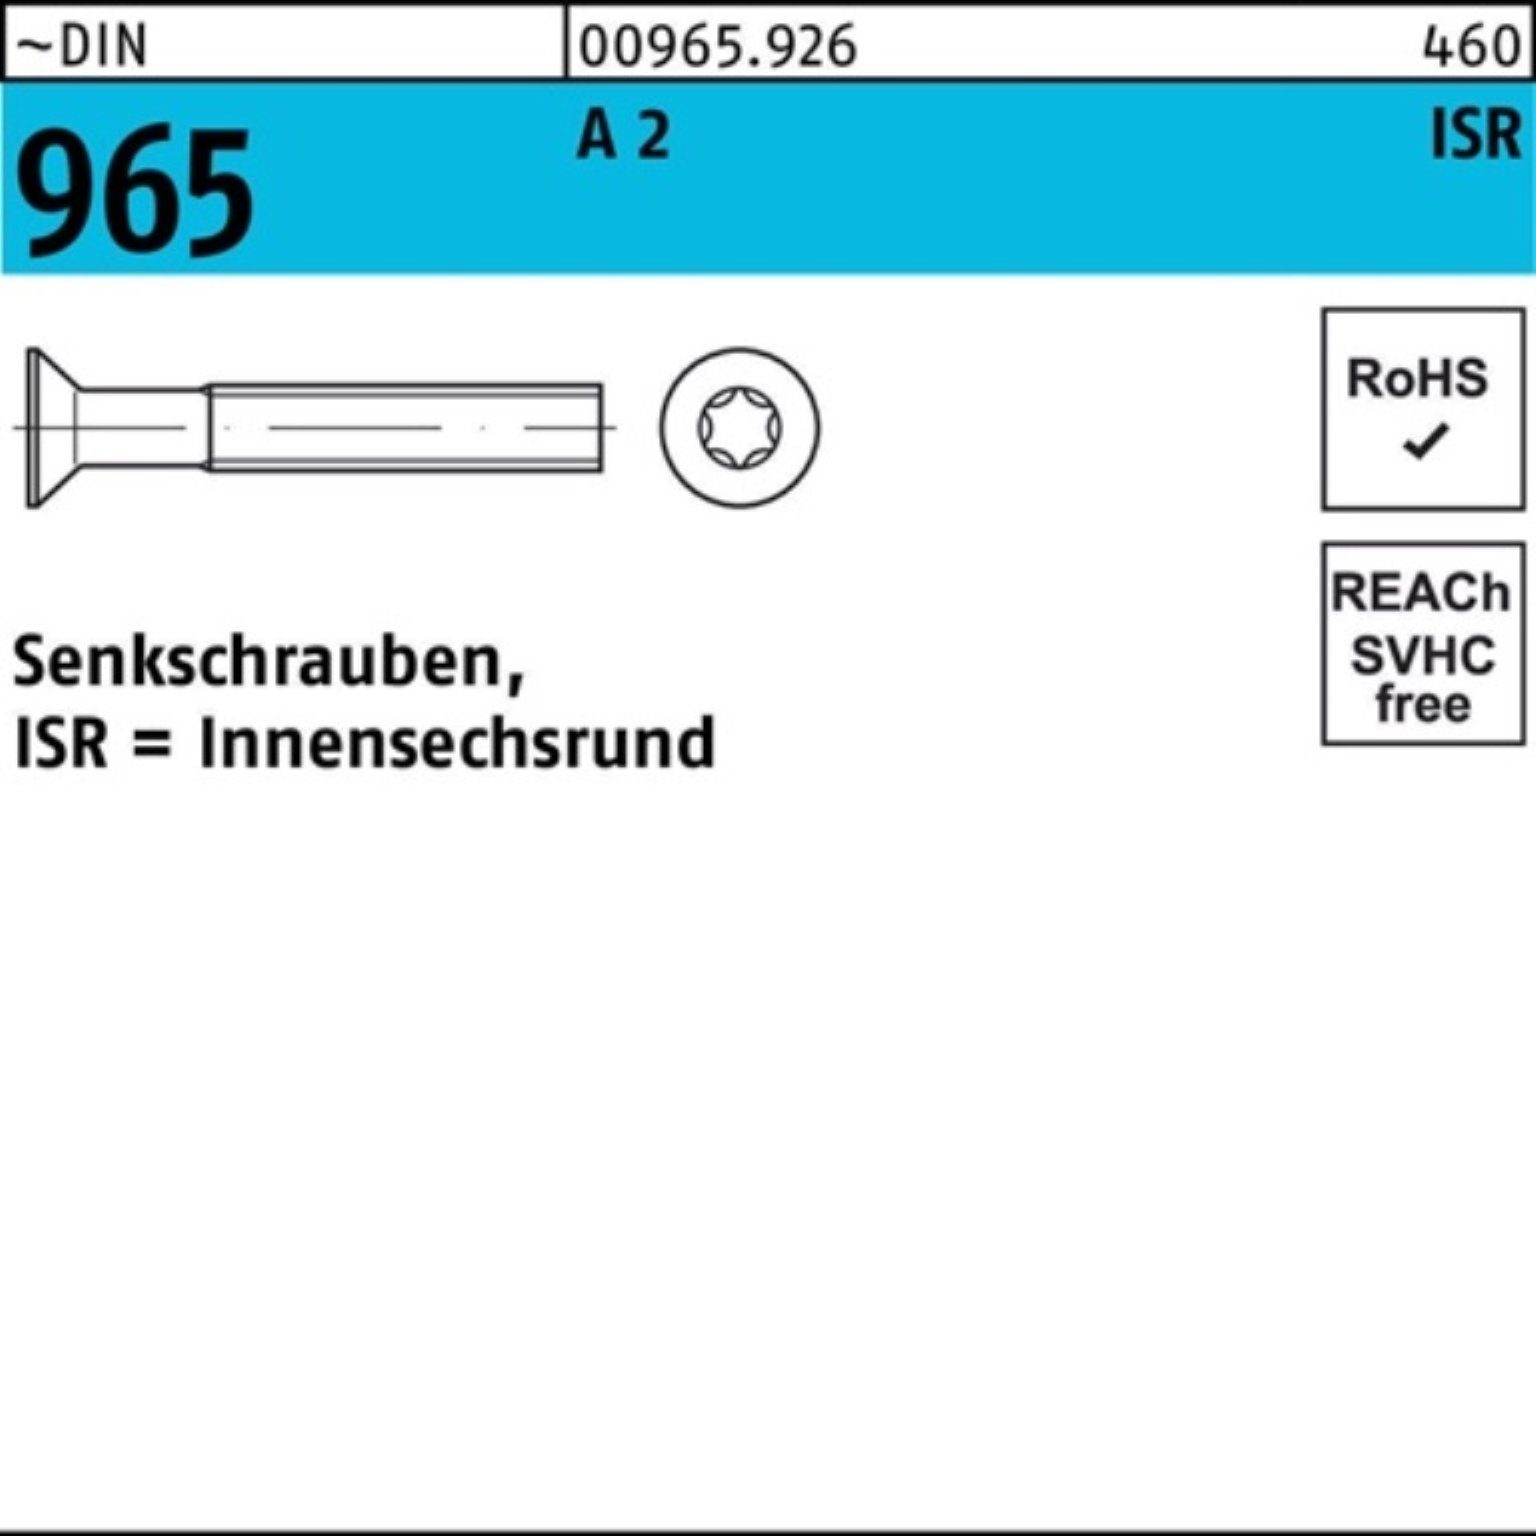 Reyher Senkschraube 2 Senkschraube ISR 96 965 Pack DIN Stück 1000 A ~DIN 5-T20 M4x 1000er